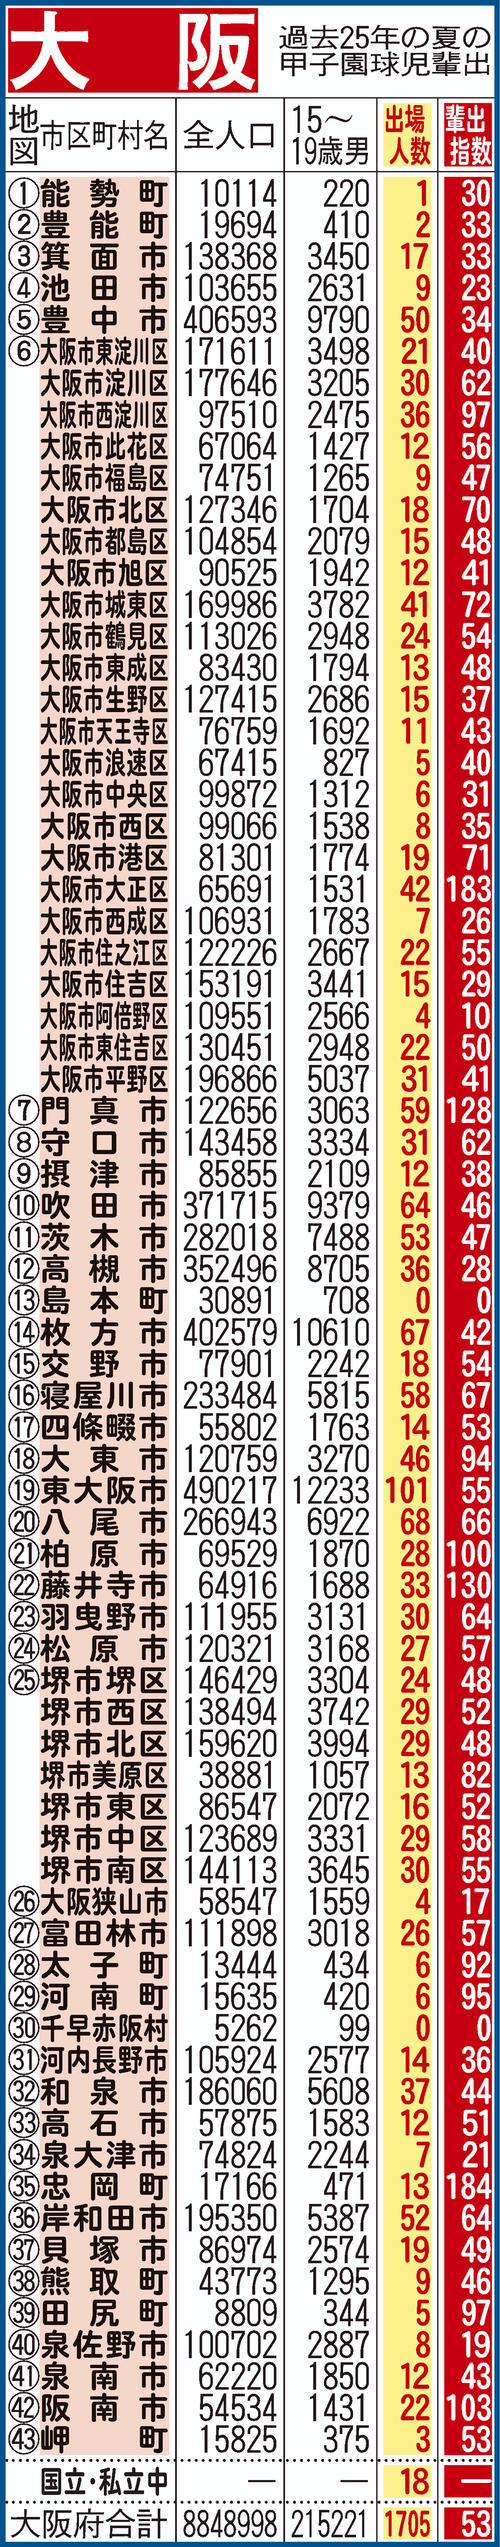 過去25年間における大阪府地域別の甲子園輩出指数